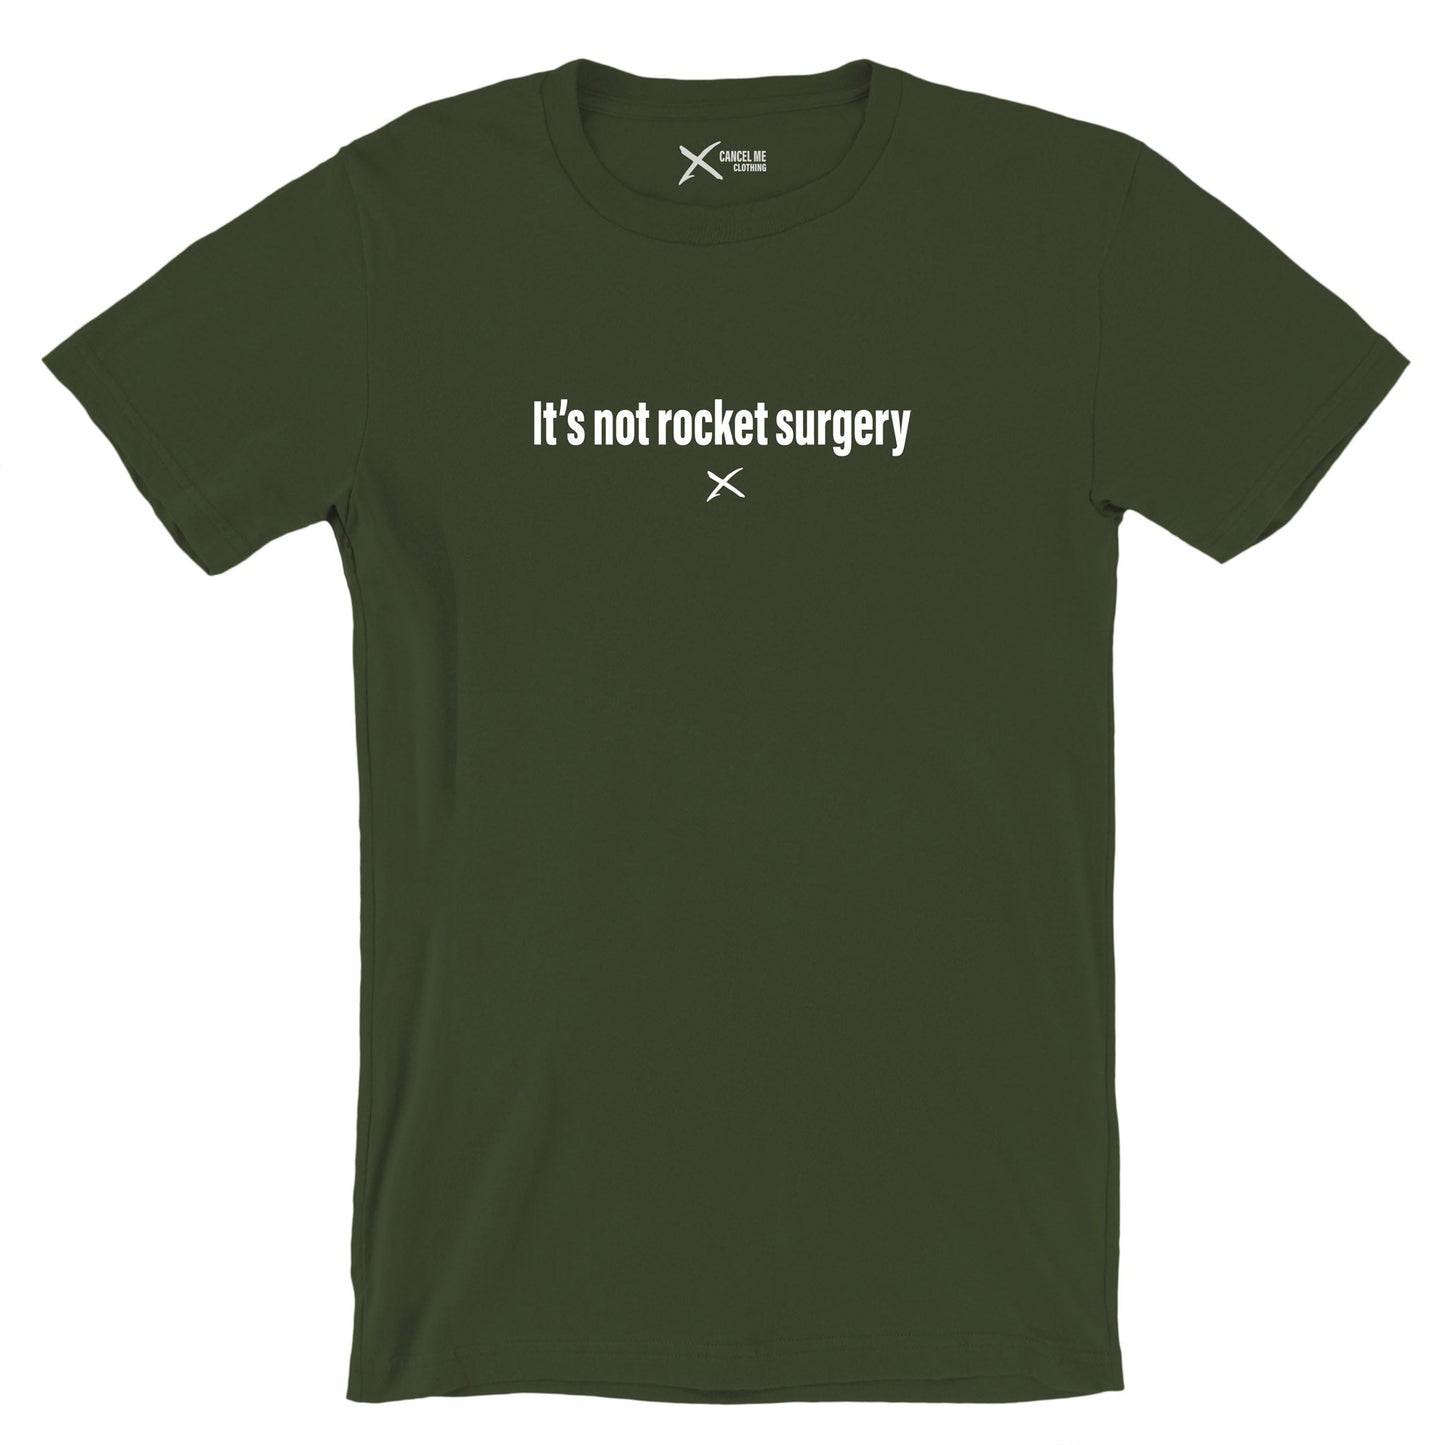 It's not rocket surgery - Shirt